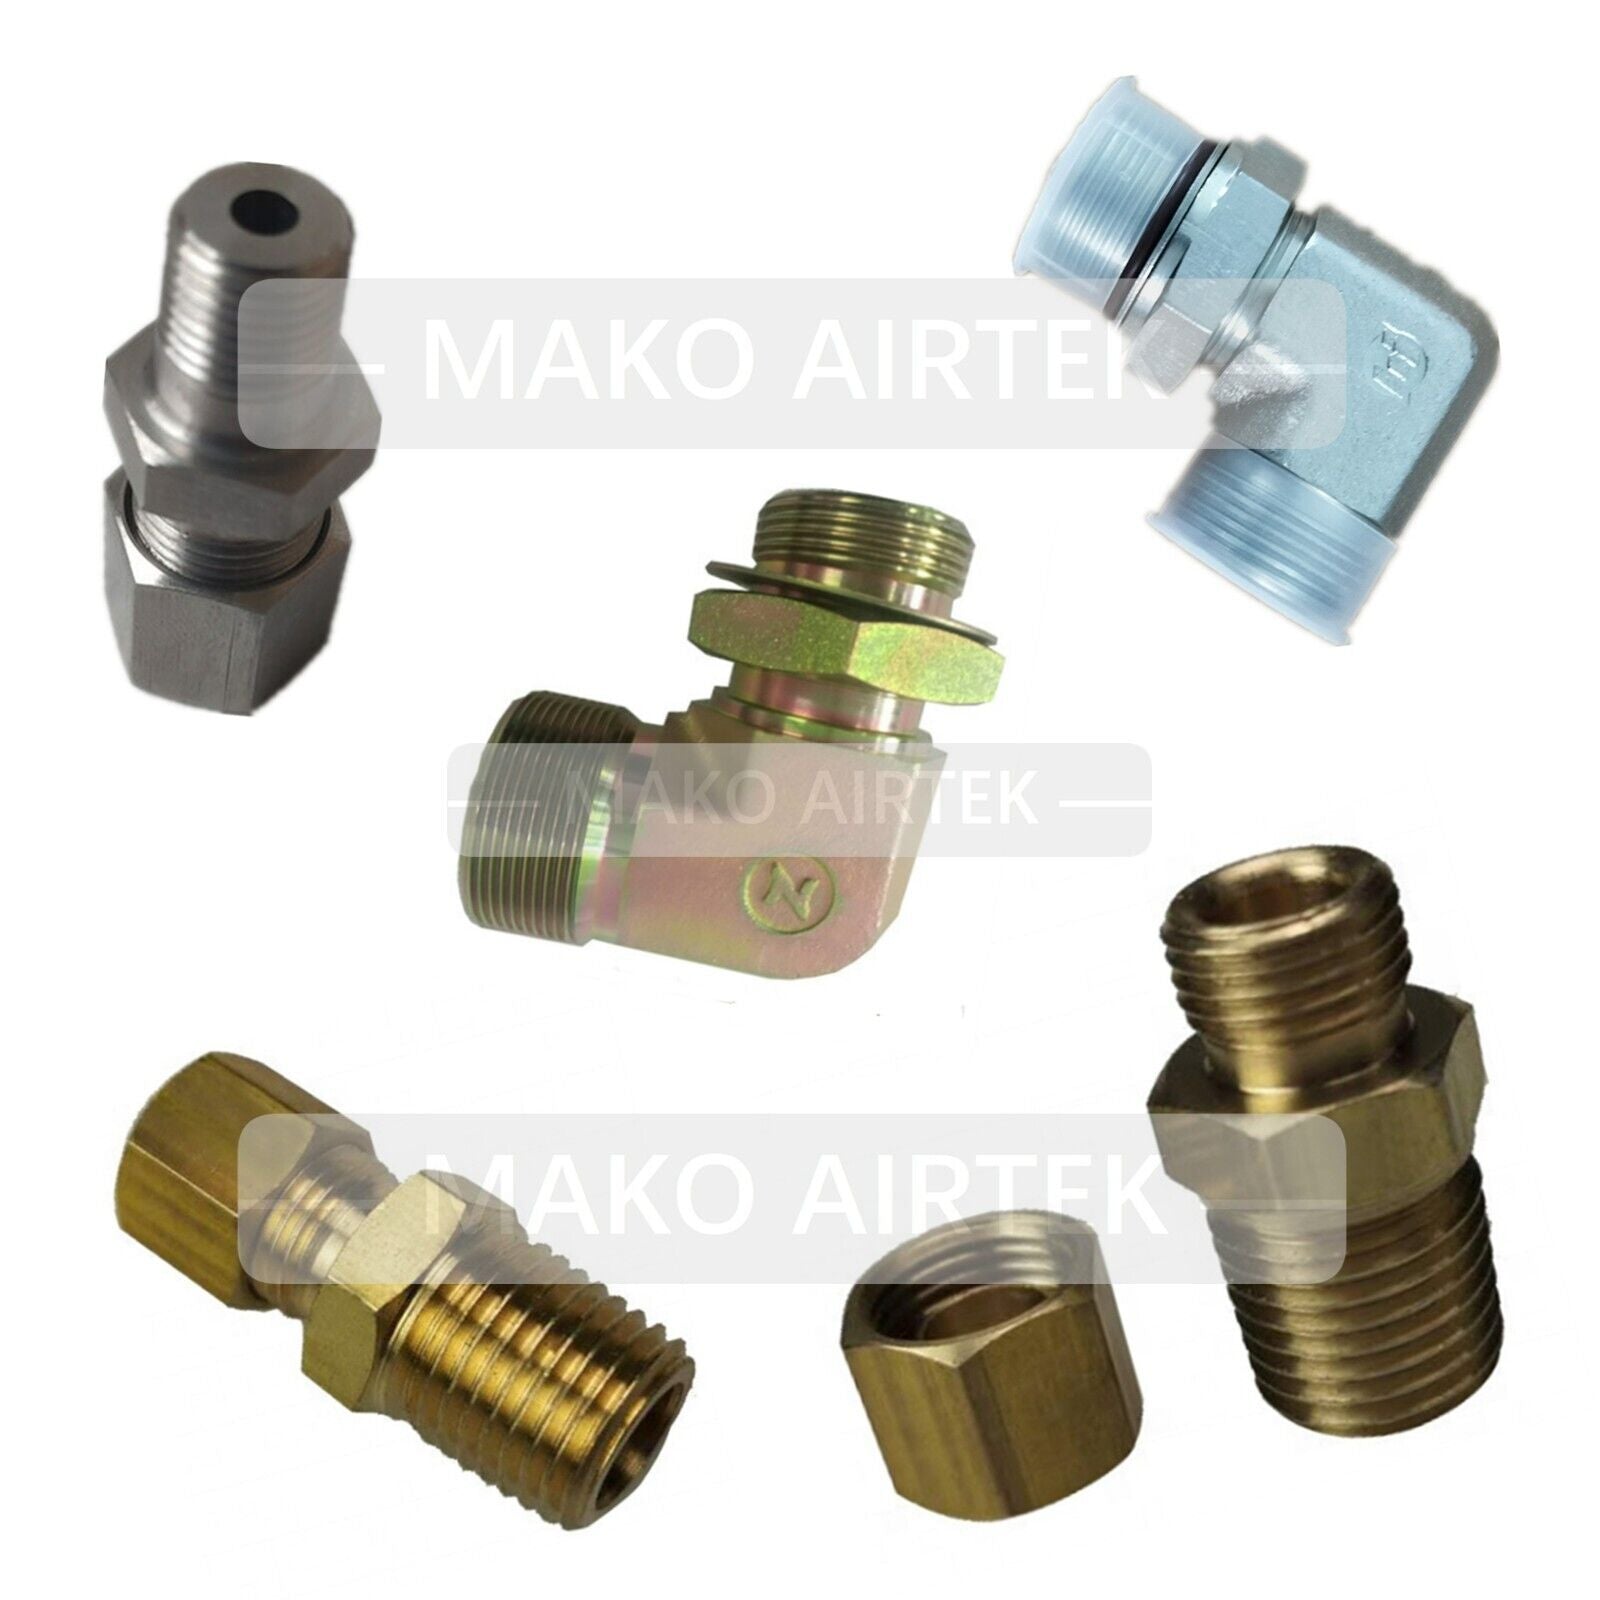 23531569 Repair Kit Fits Ingersoll Rand Air Compressor – MAKO AIRTEK